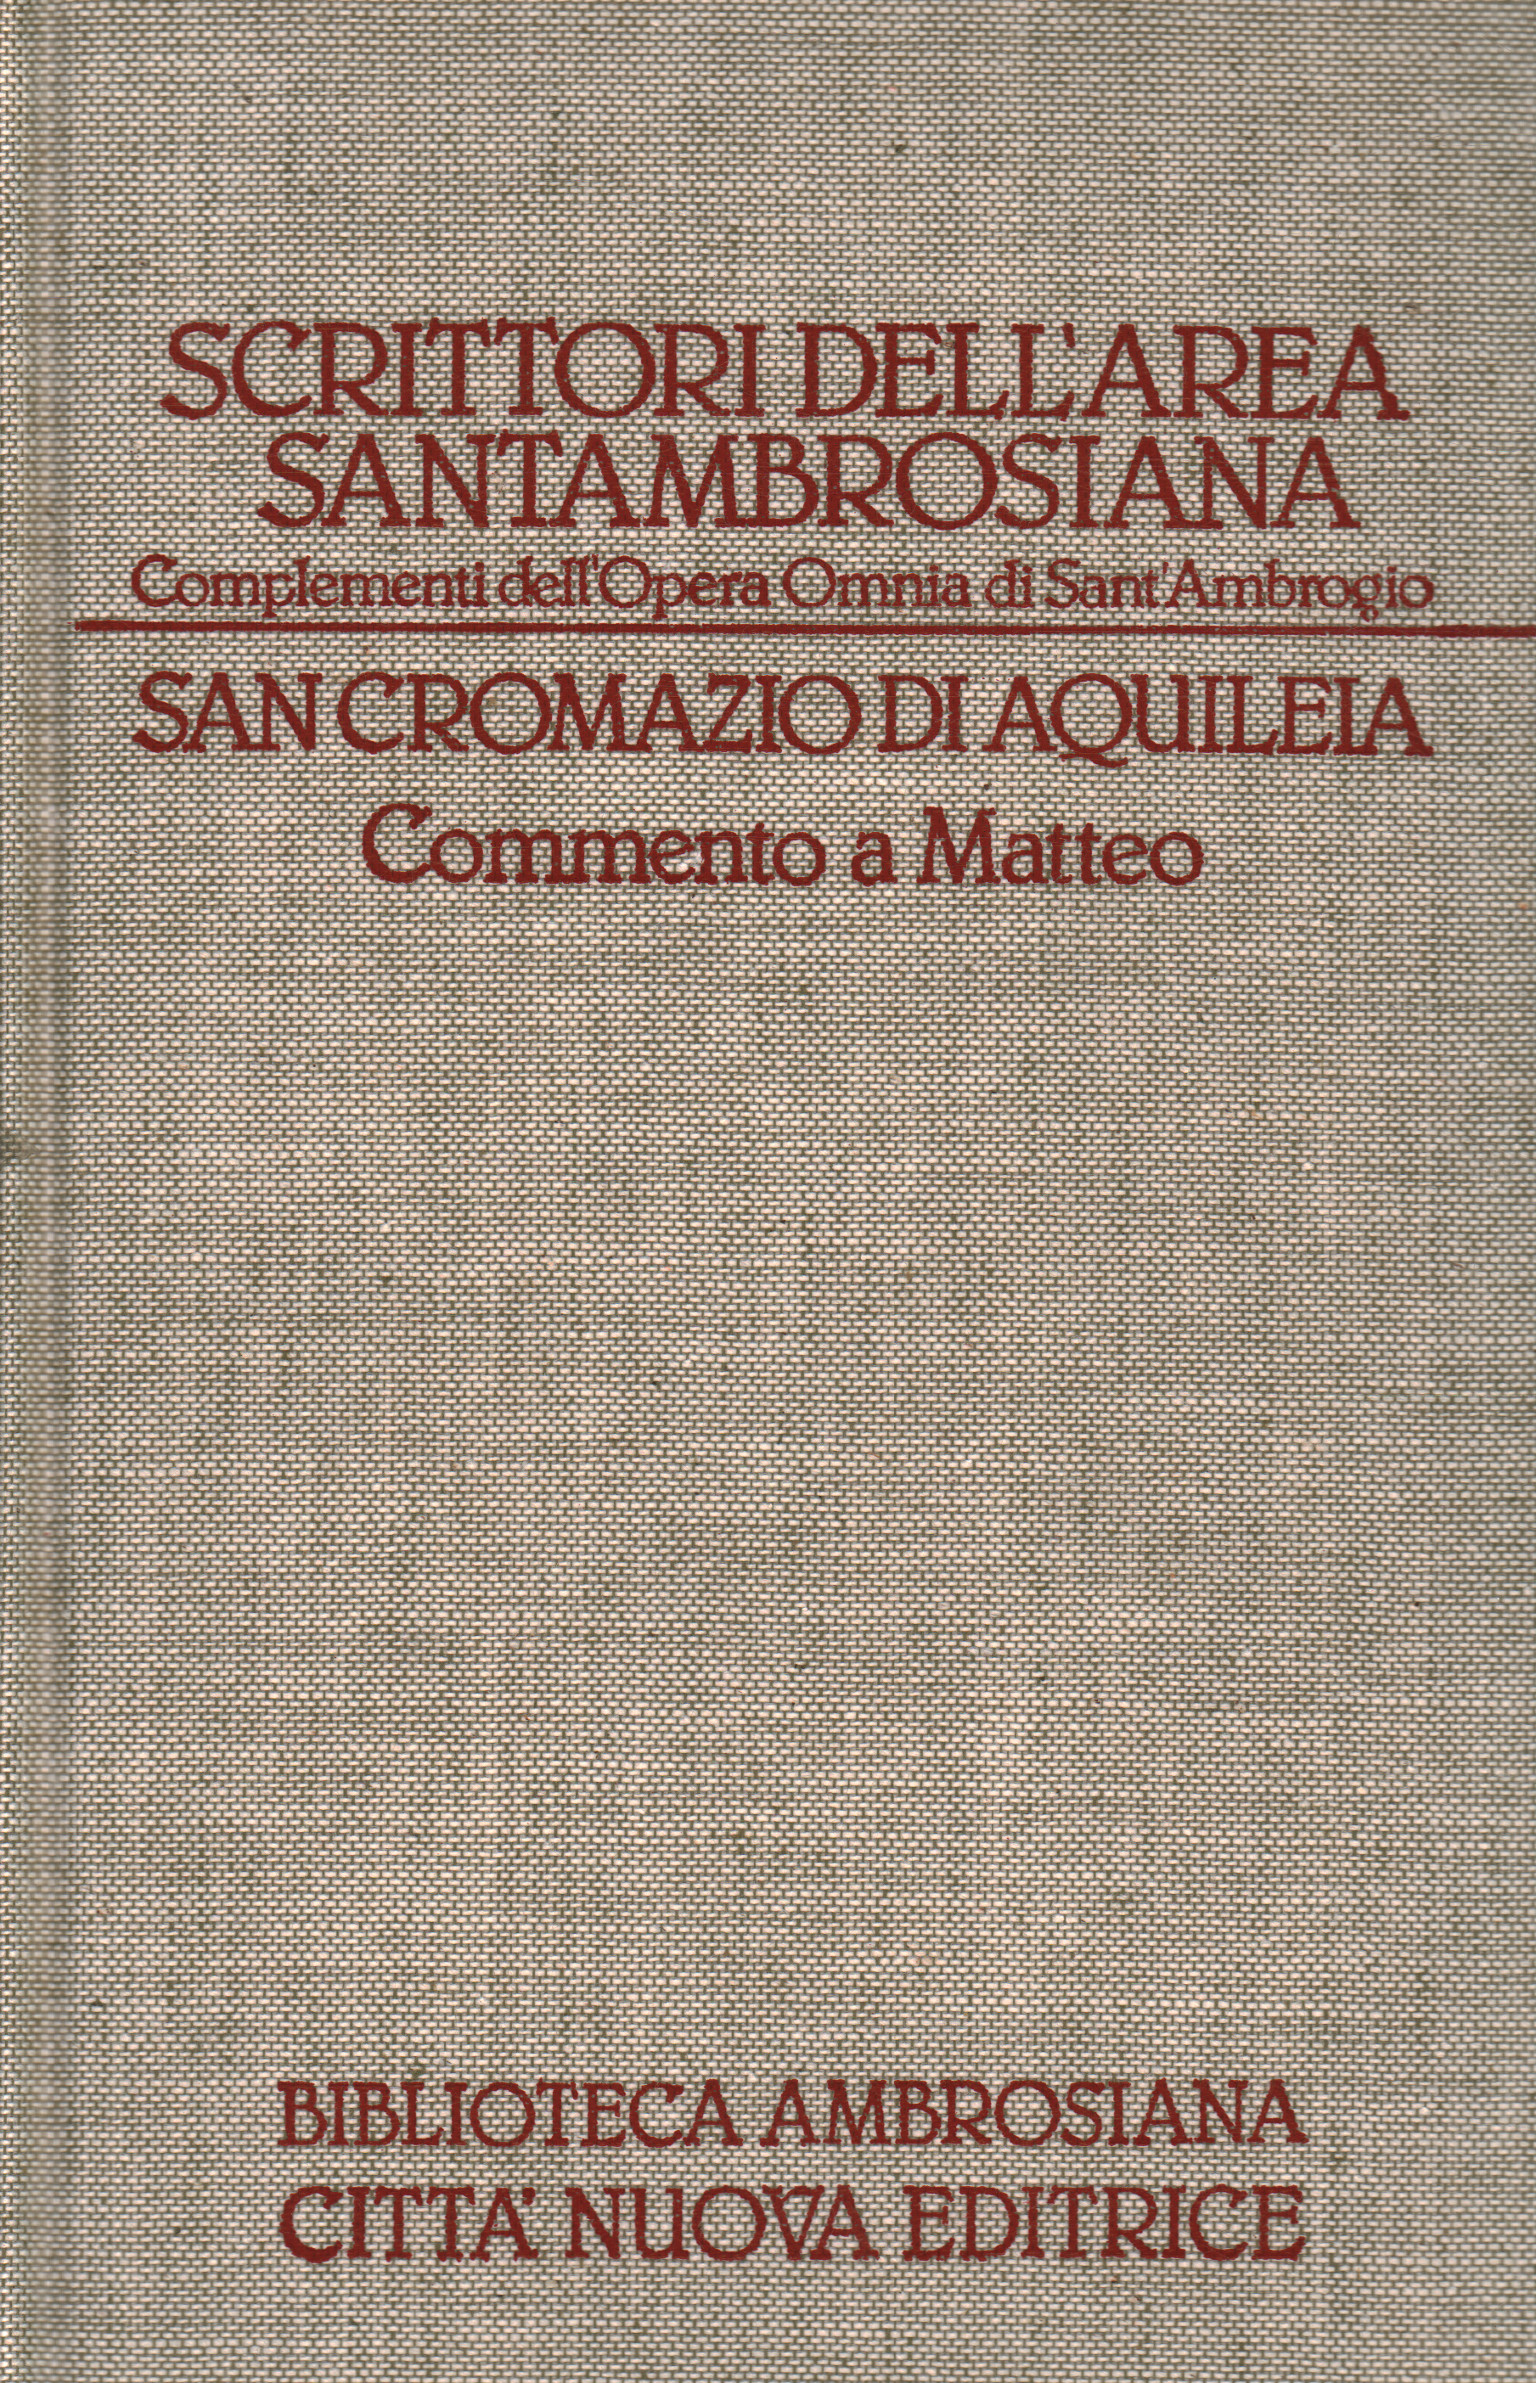 Écrivains de la région de Santambrosiana., San Cromazio di Aquileia. Commentaire à M